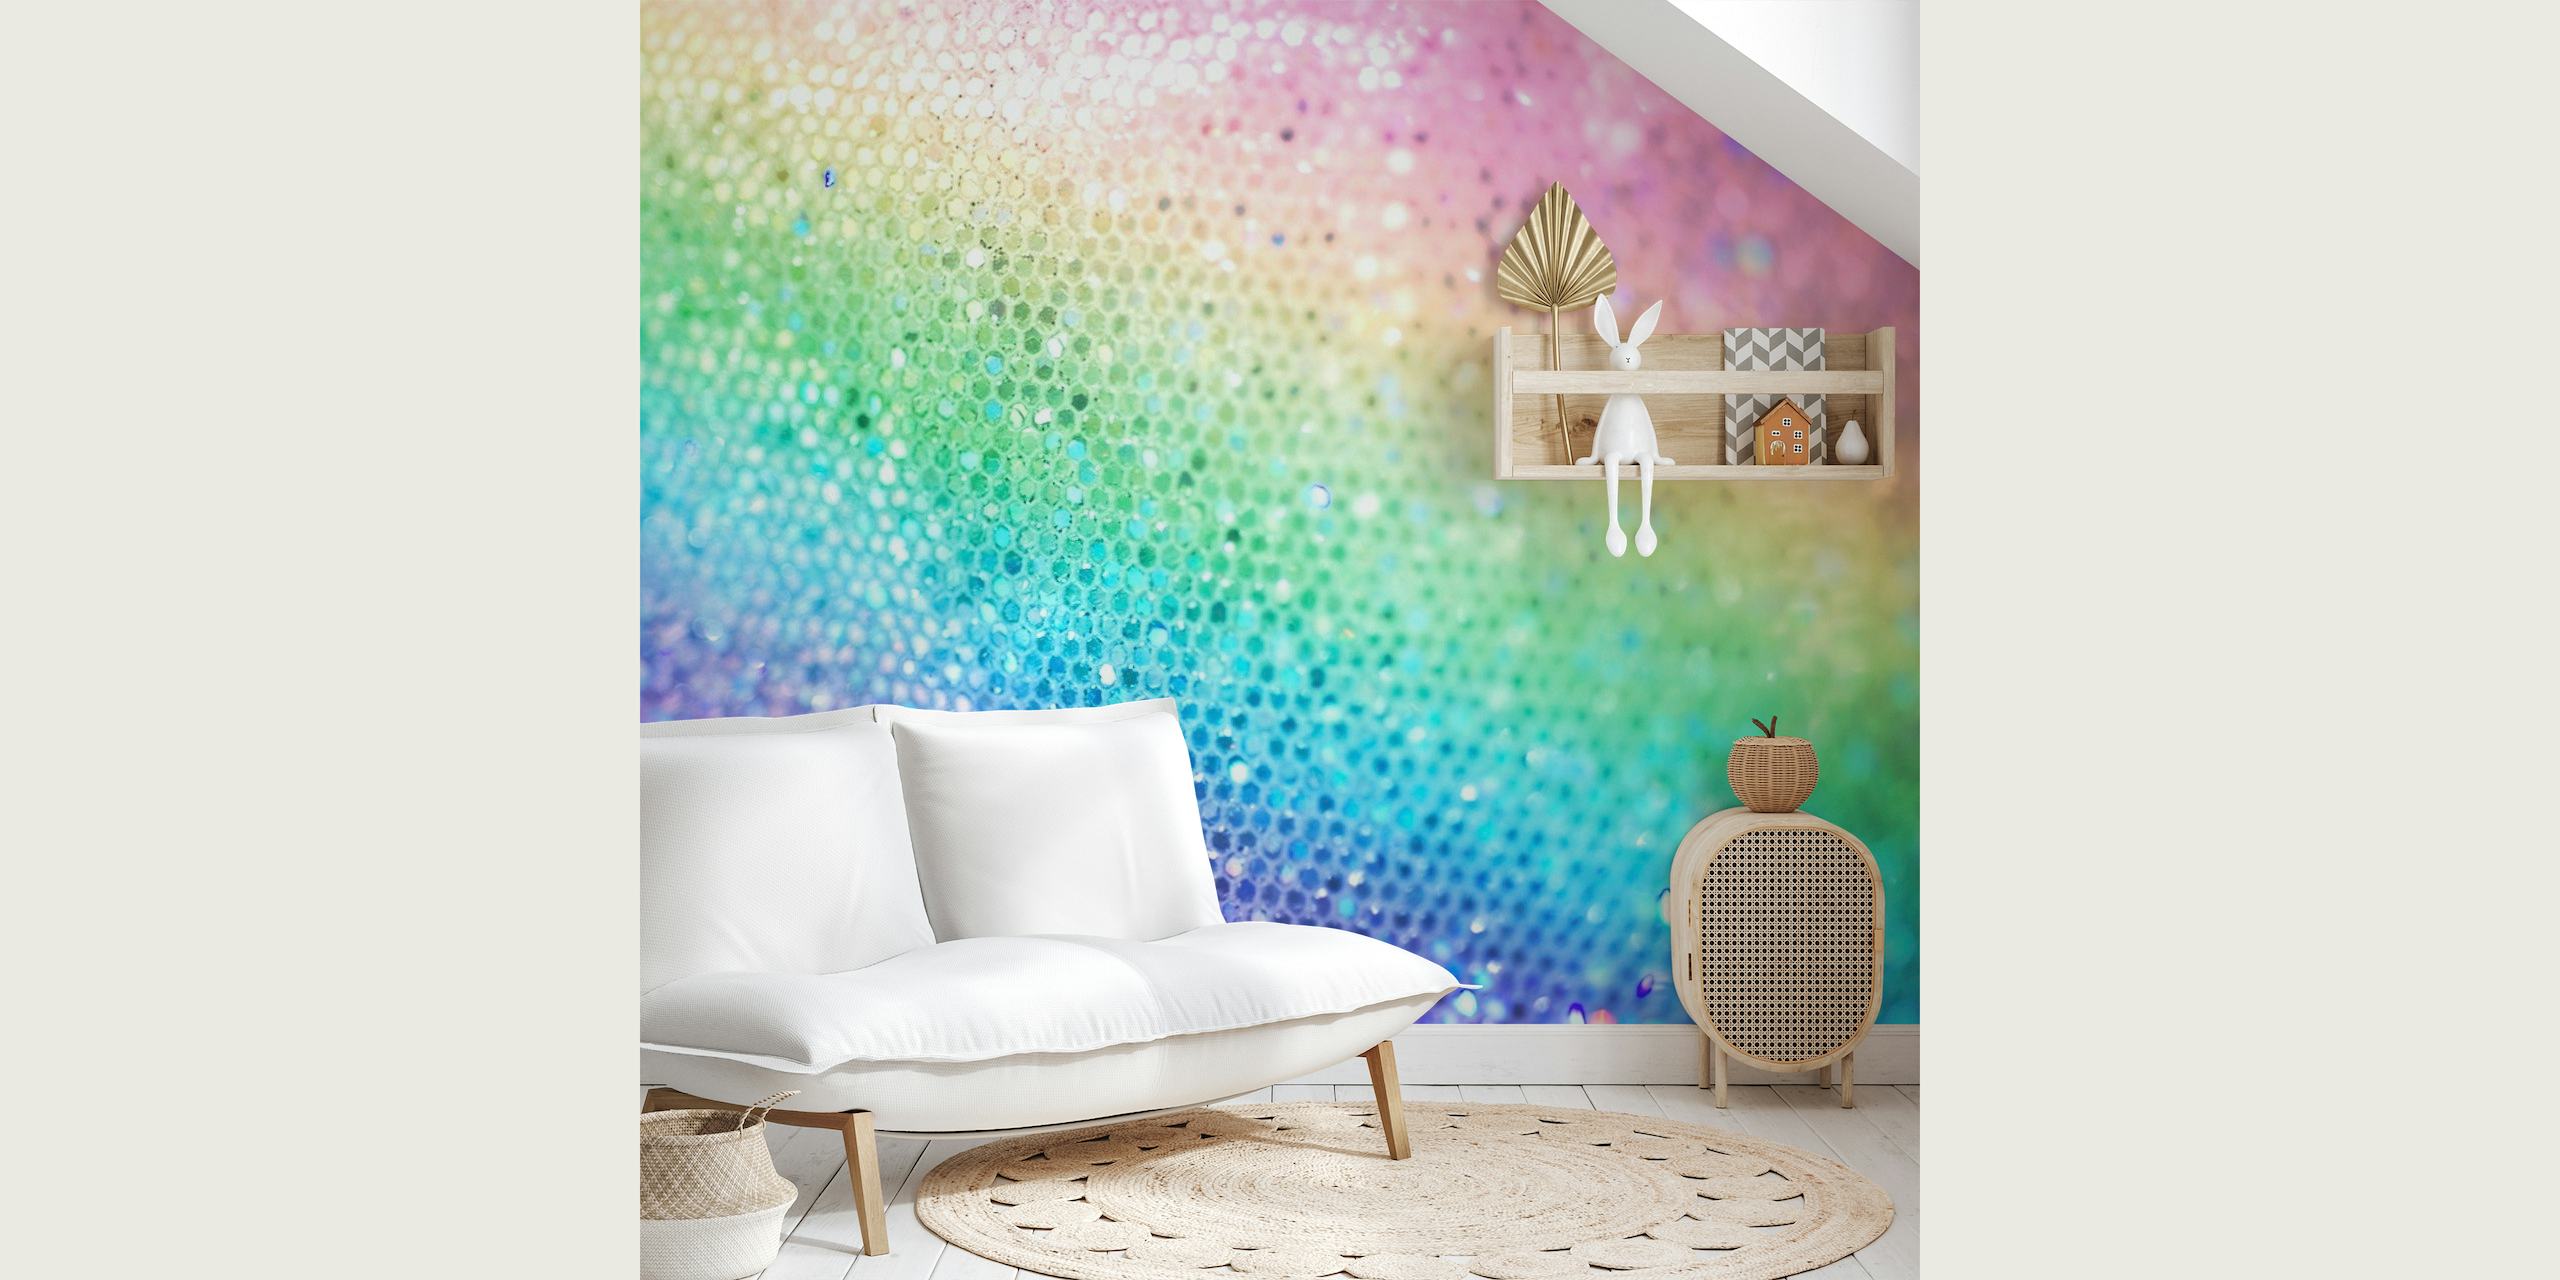 Kleurrijke Rainbow Princess Glitter fotobehang met sprankelend textuureffect